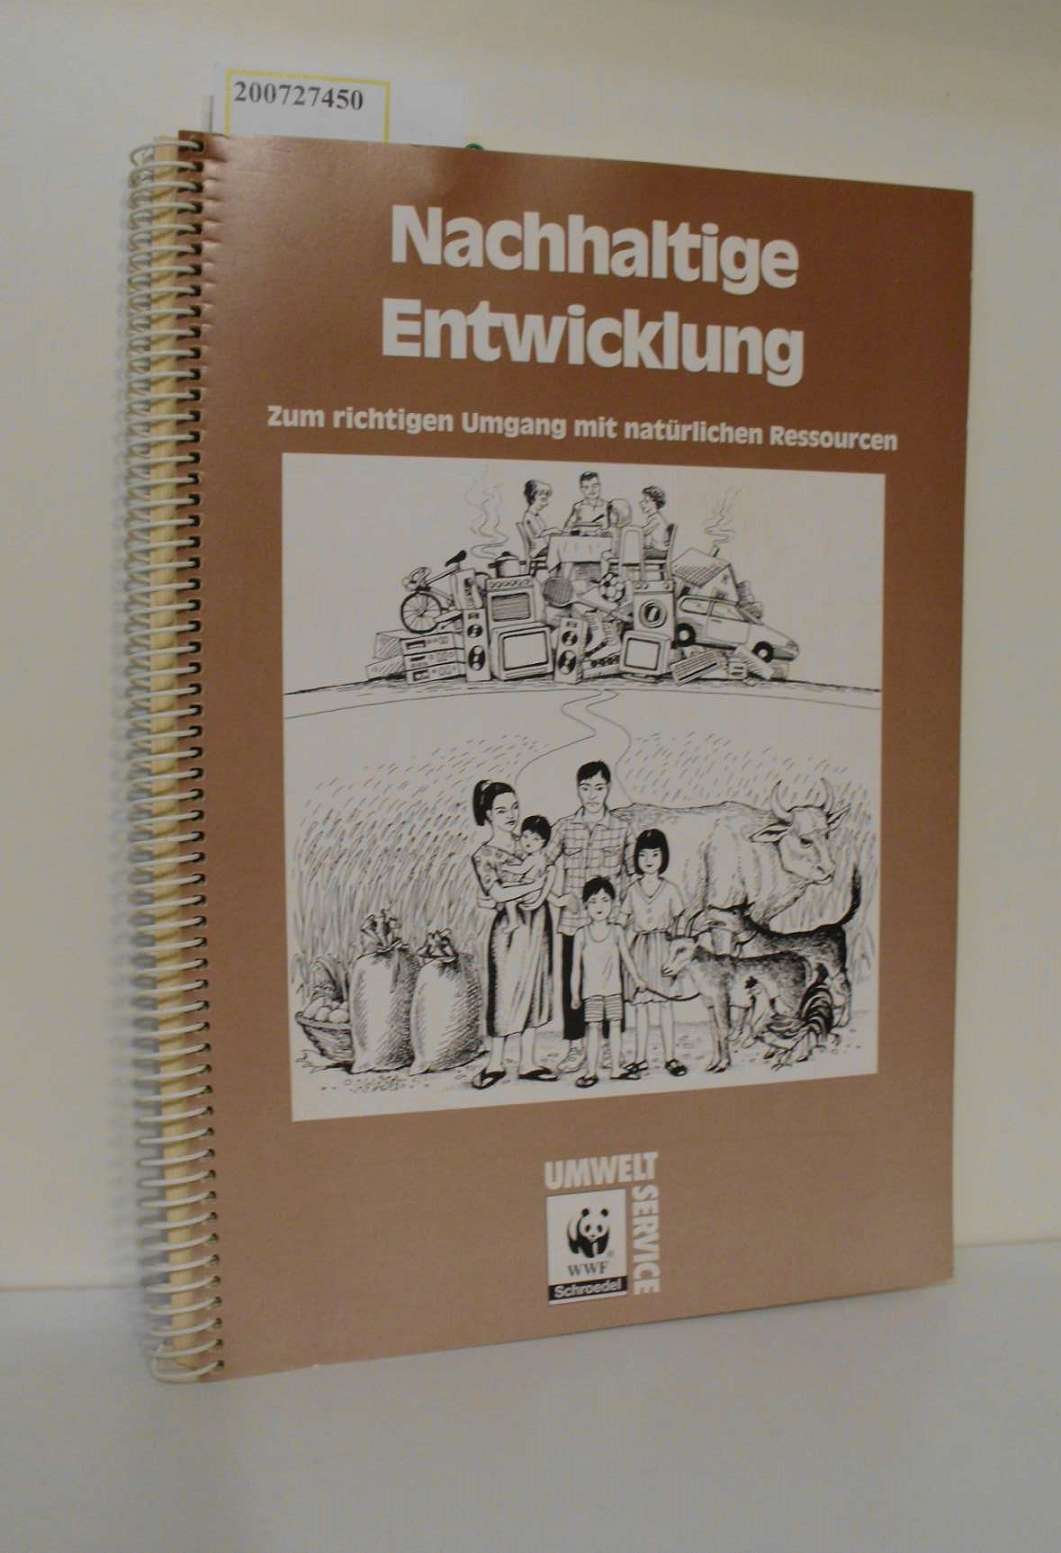 Nachhaltige Entwicklung : zum richtigen Umgang mit natürlichen Ressourcen / WWF / Umwelt-Service - HEIDORN, FRITZ (Herausgeber).